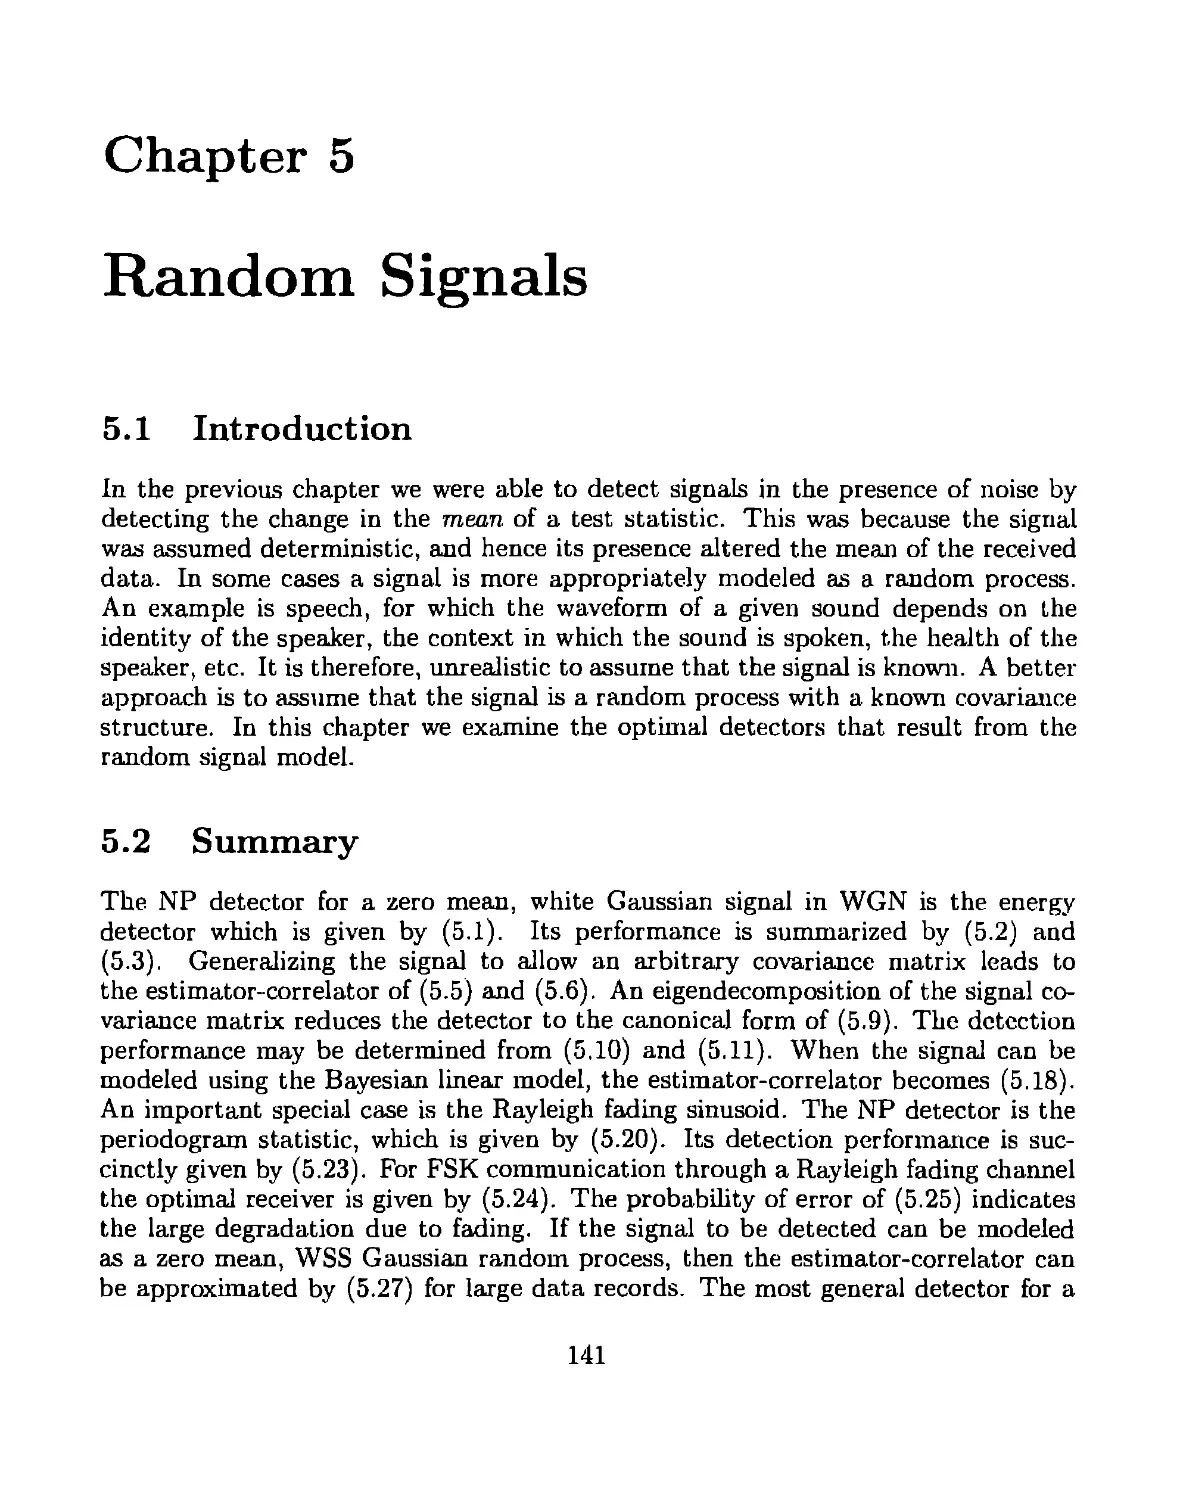 5 Random signals
5.2 Summary